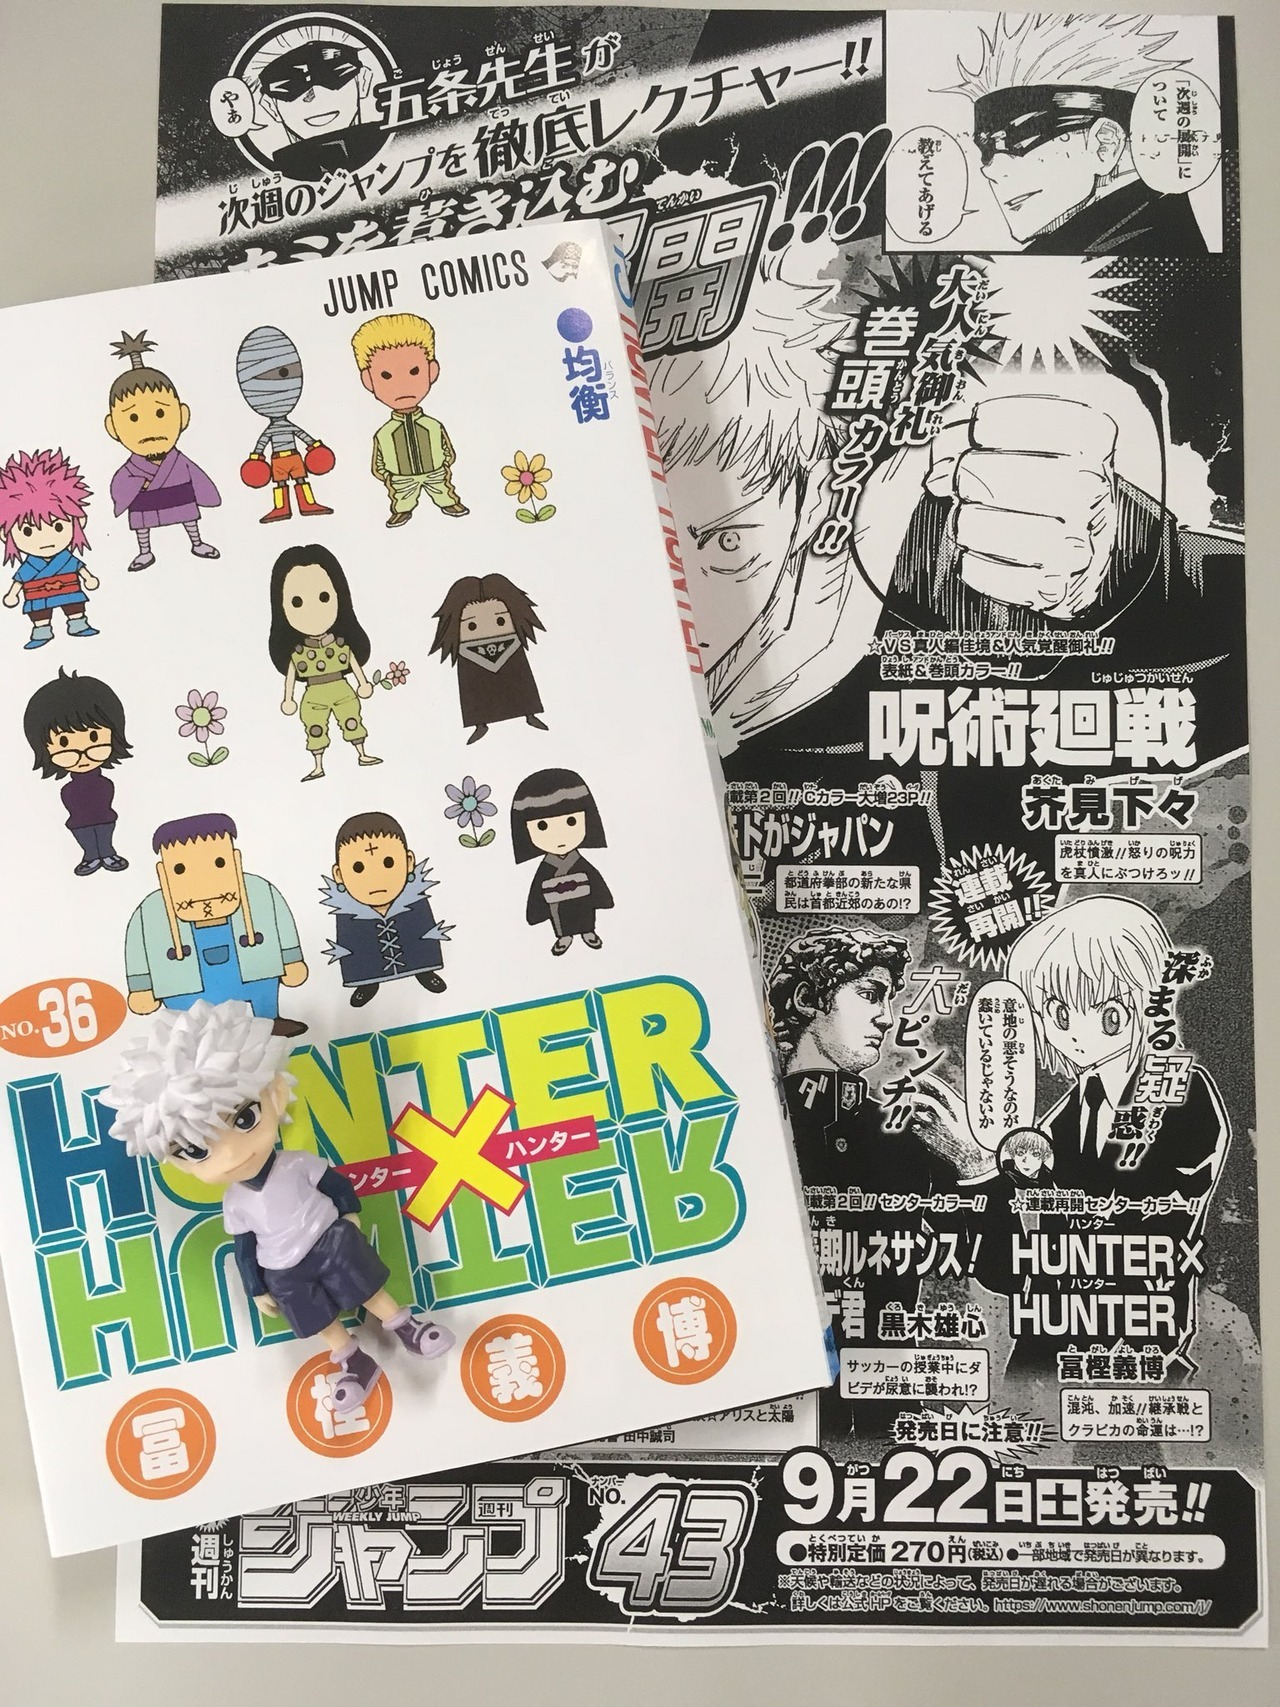 âHunter x Hunterâ manga volume 36 cover preview.